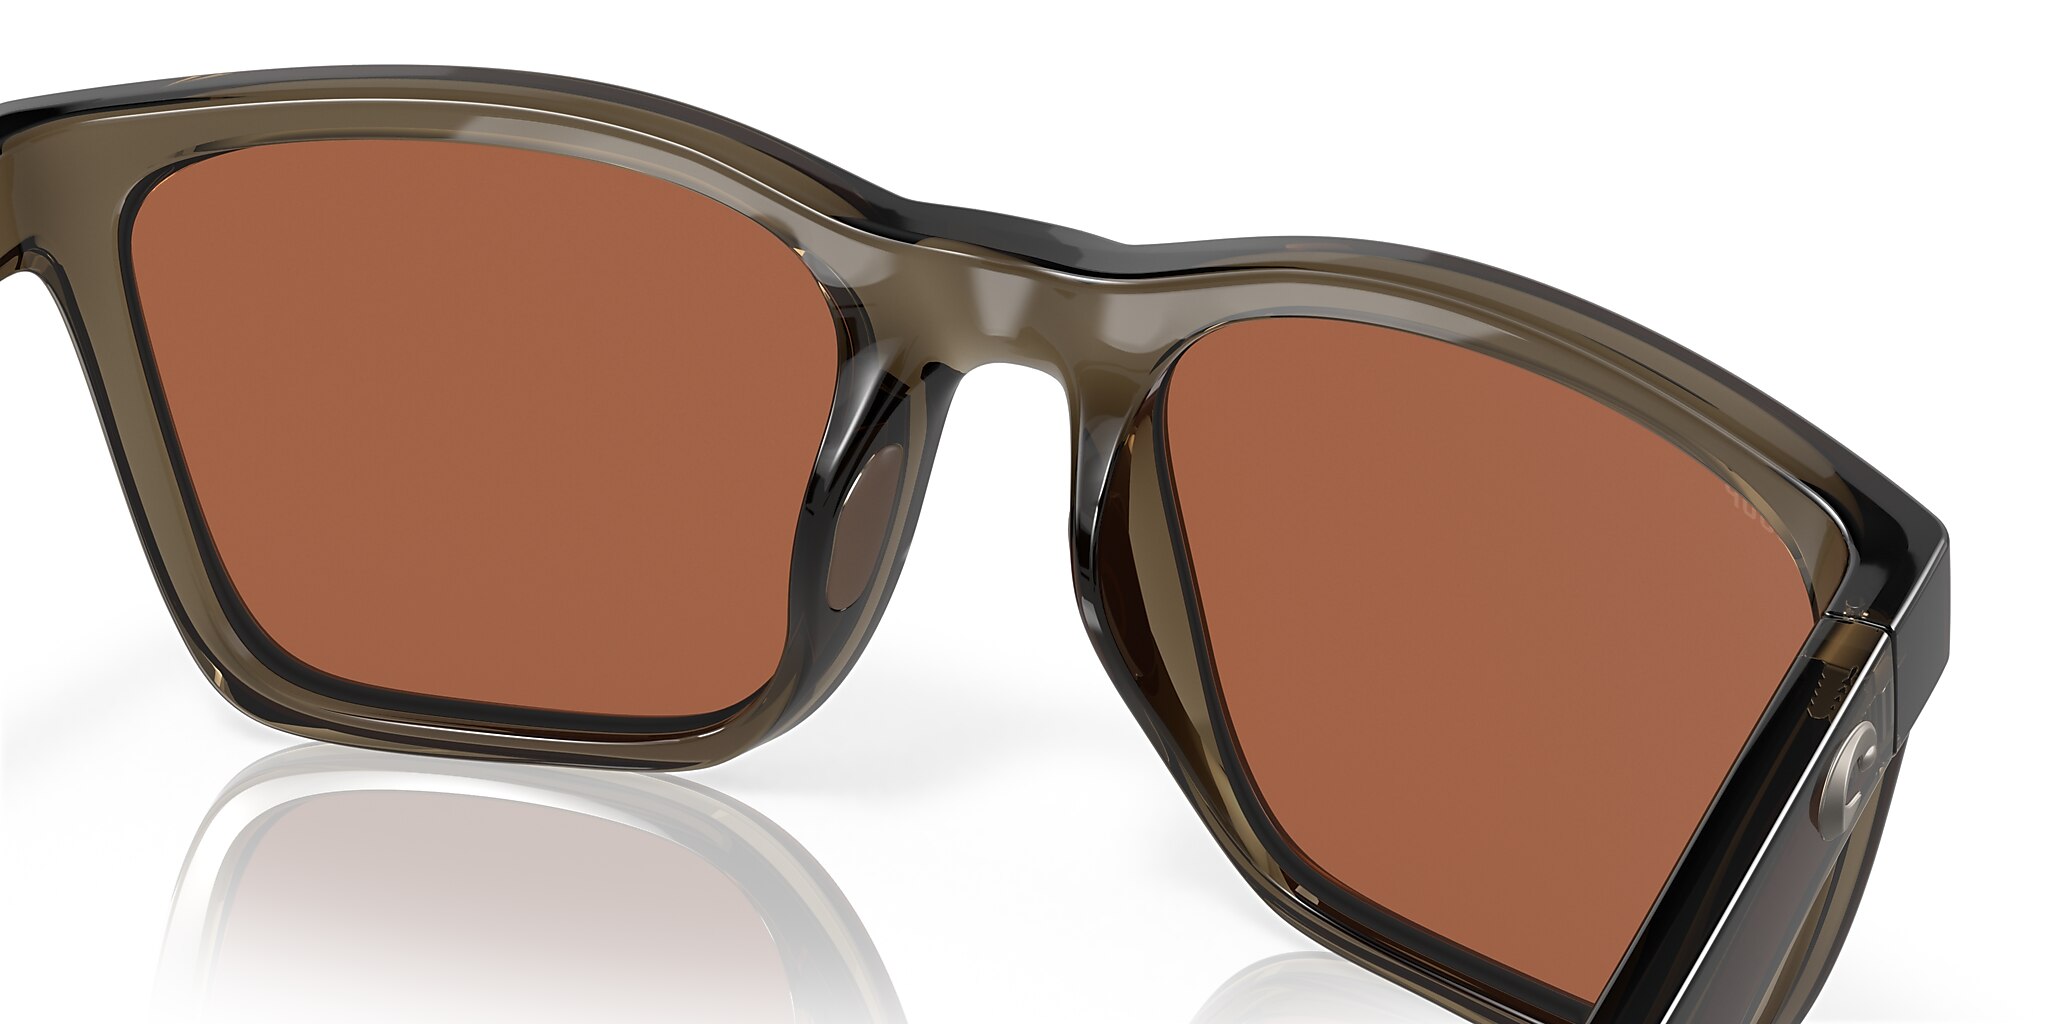 Panga Polarized Sunglasses in Copper Silver Mirror | Costa Del Mar®